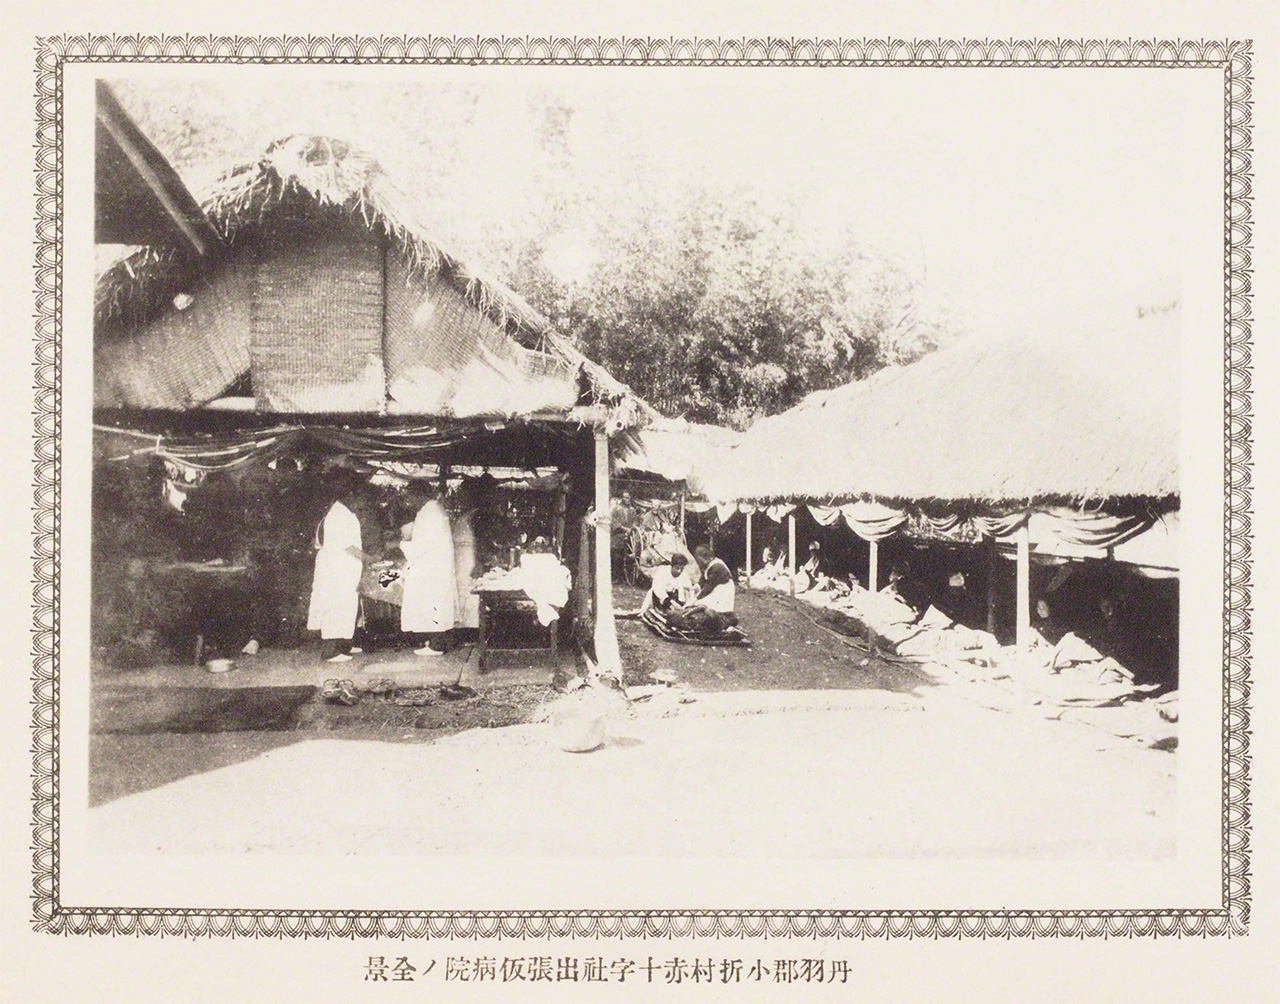 Une photographie immortalisant les efforts de secours de la Croix-Rouge japonaise après le tremblement de terre de Nôbi en 1891.